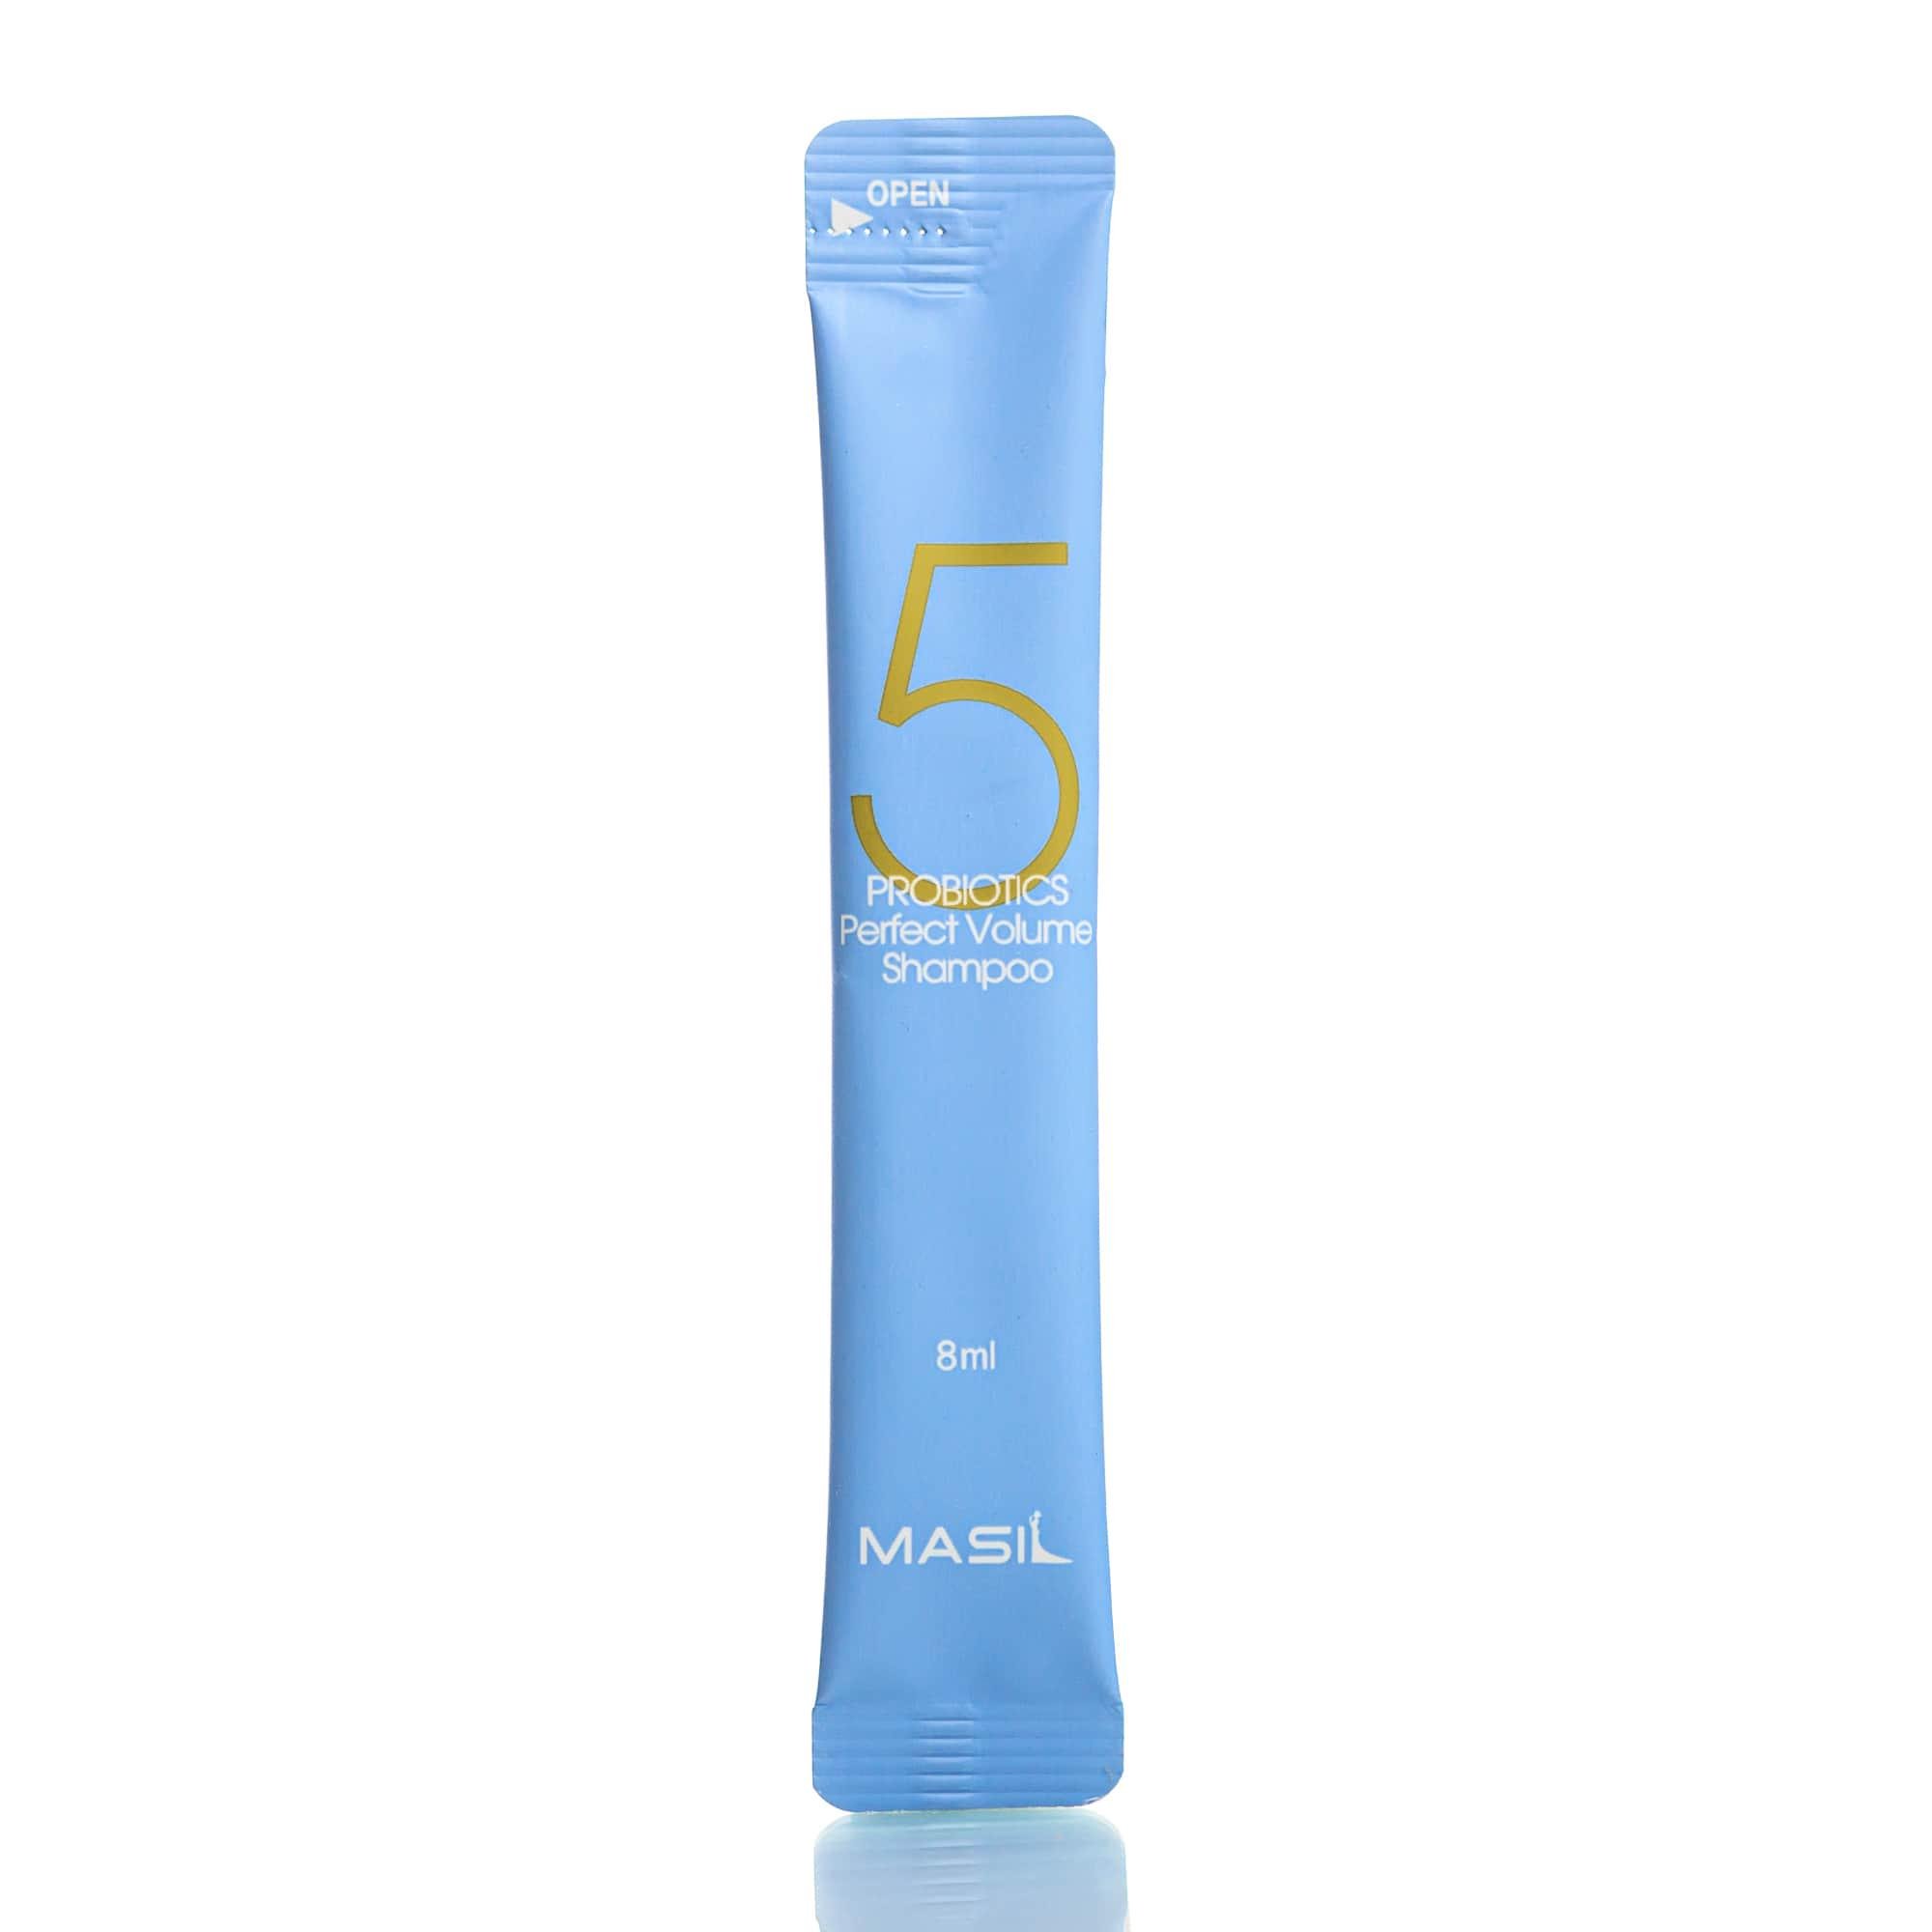 Шампунь для об'єму волосся з пробіотиками Masil 5 Probiotics Perfect Volume Shampoo 8 мл - фото 1